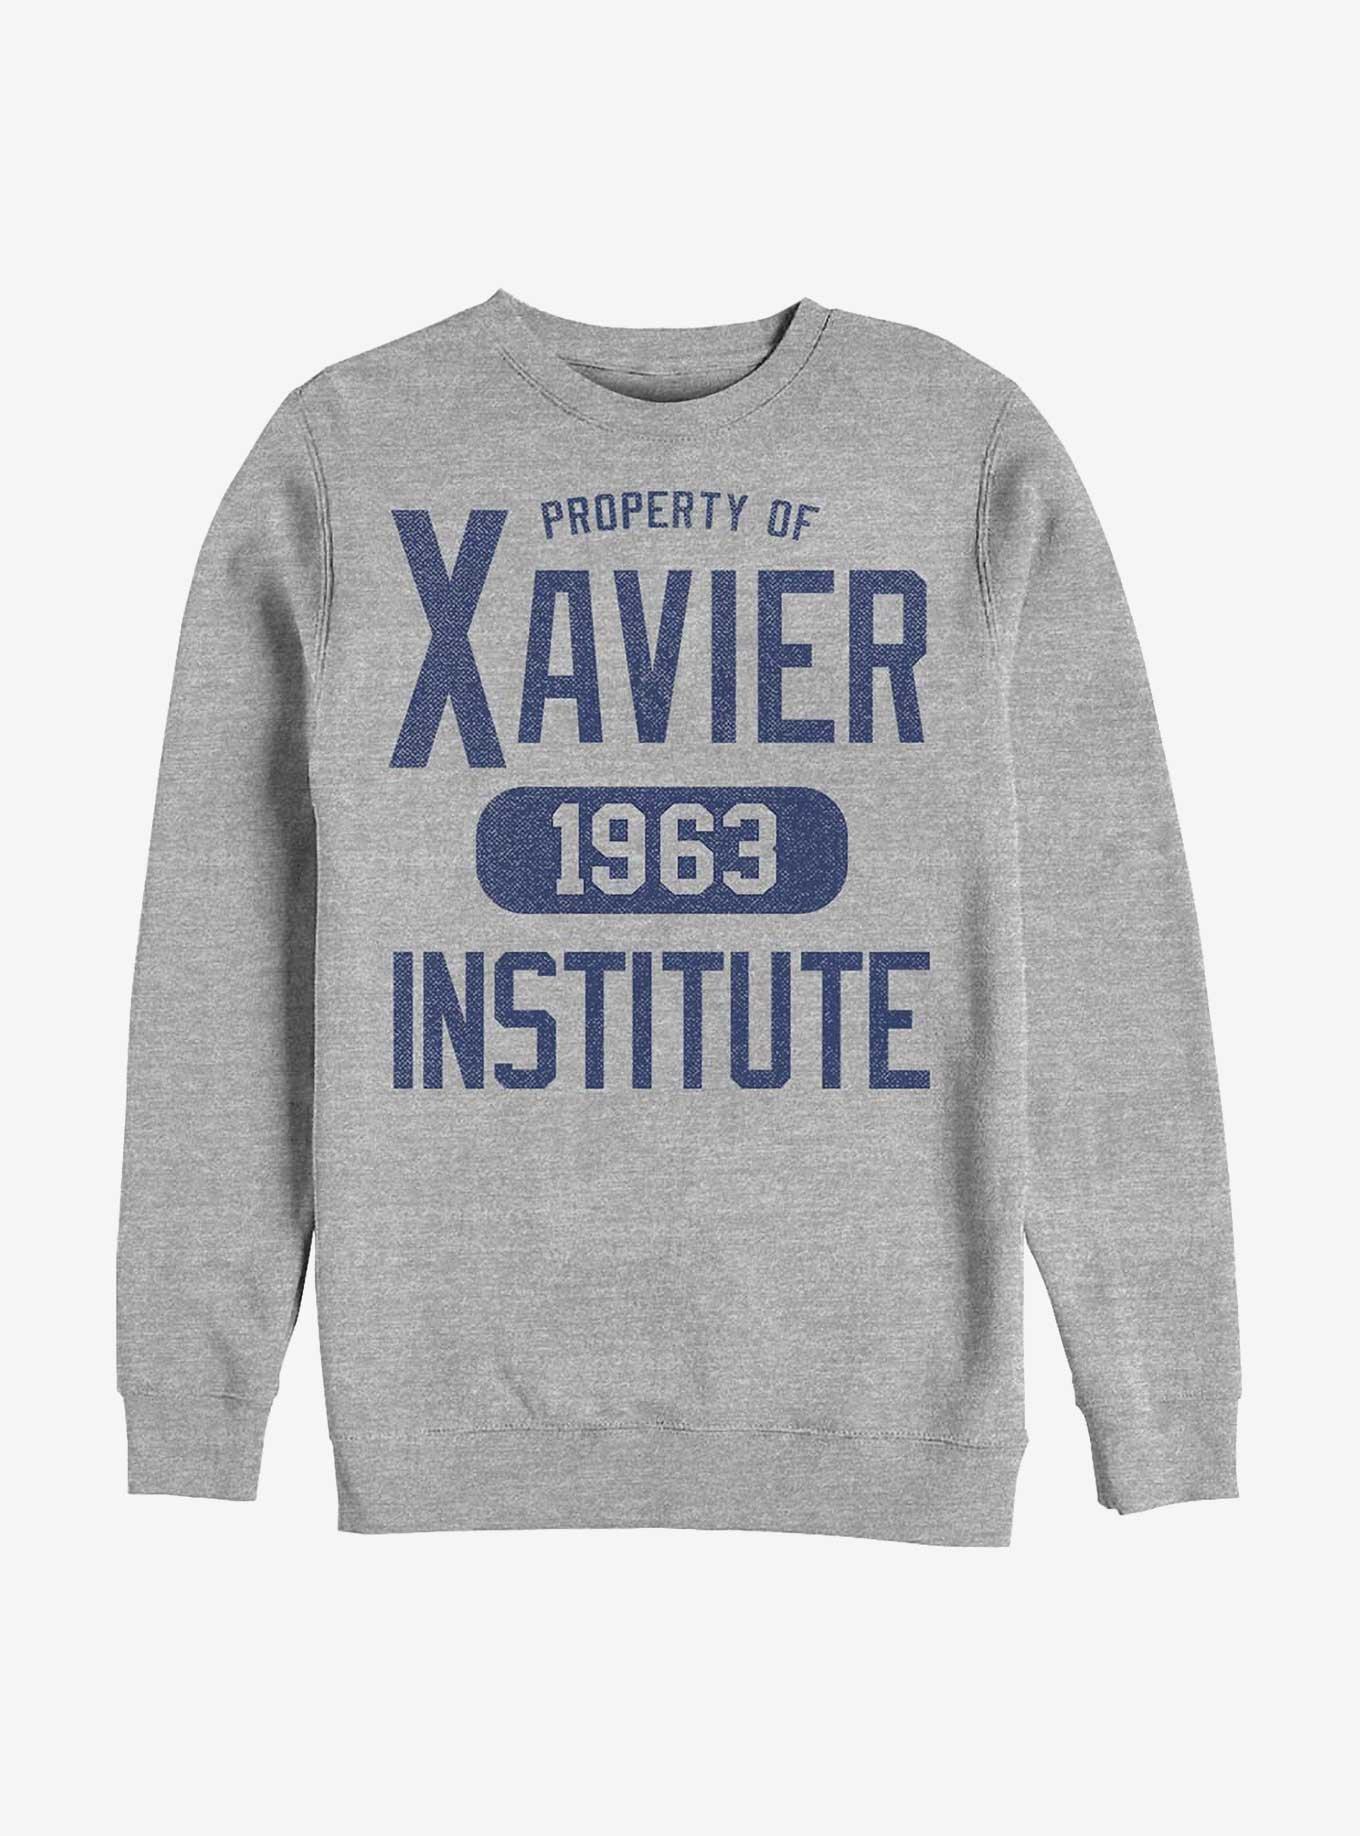 Marvel X-Men Xavier Institute Sweatshirt - GREY